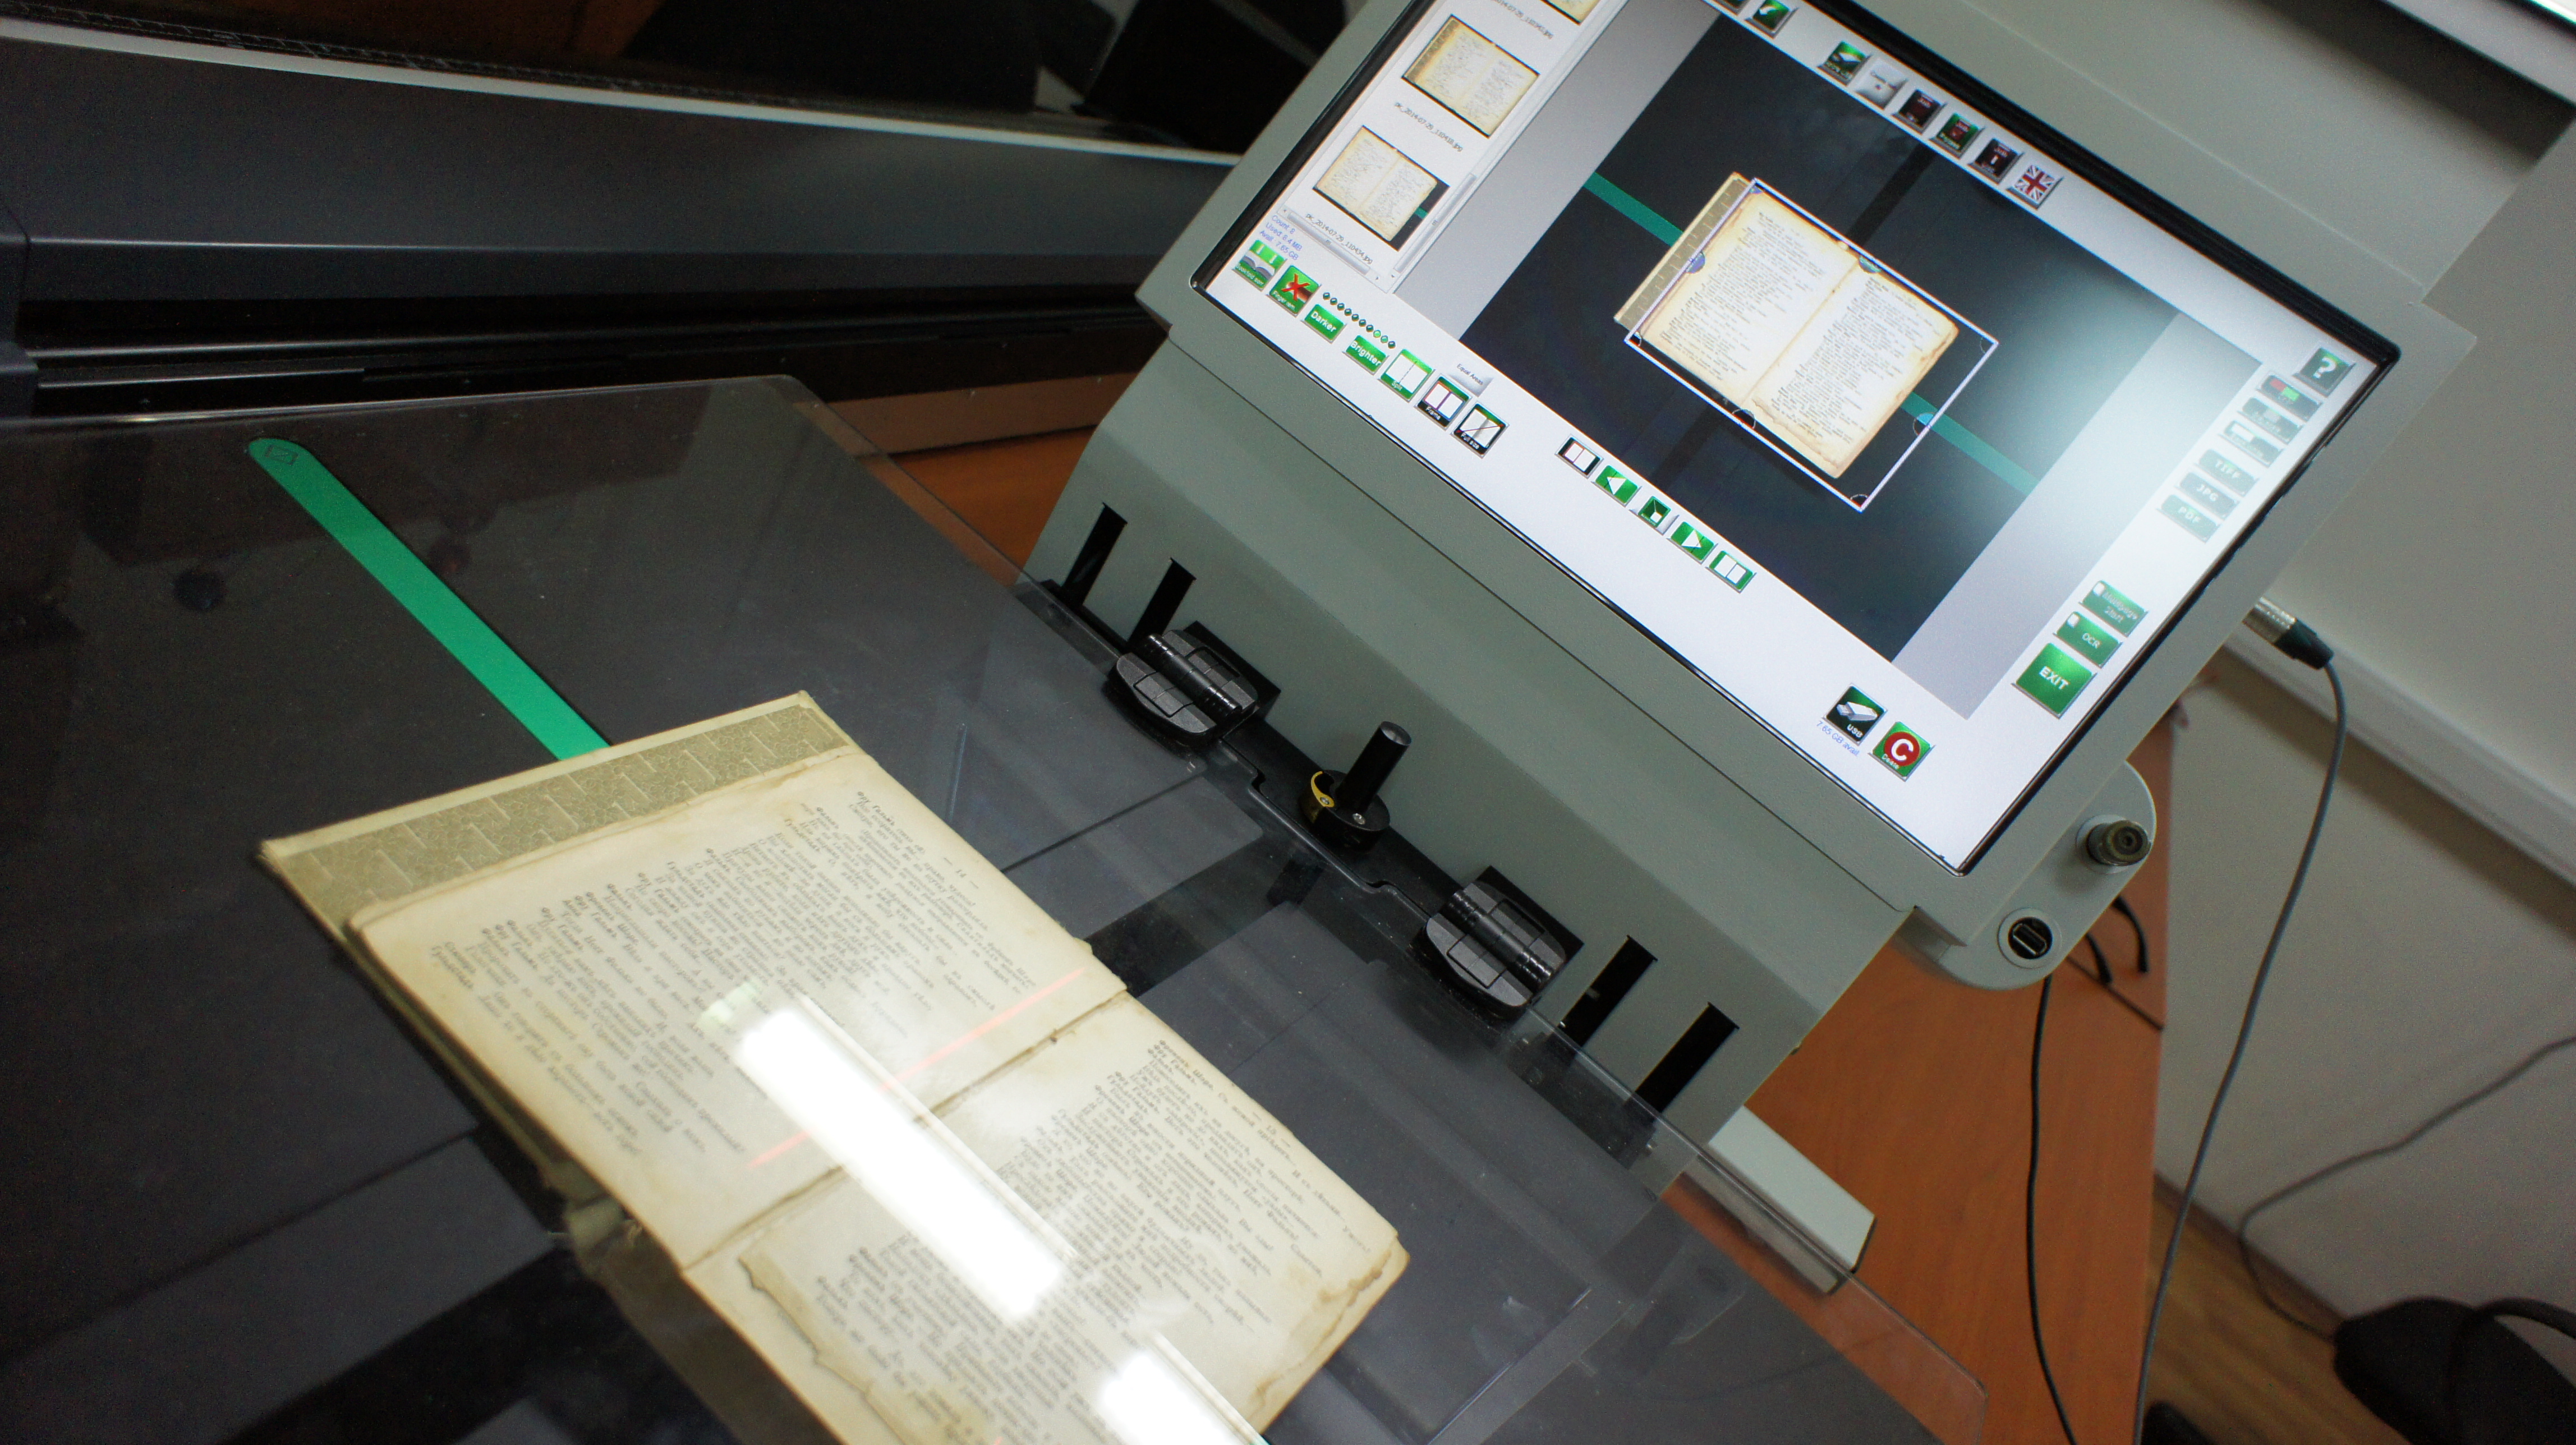 Оцифровка, сканирование книг, брошюр, документов с распознаванием текста